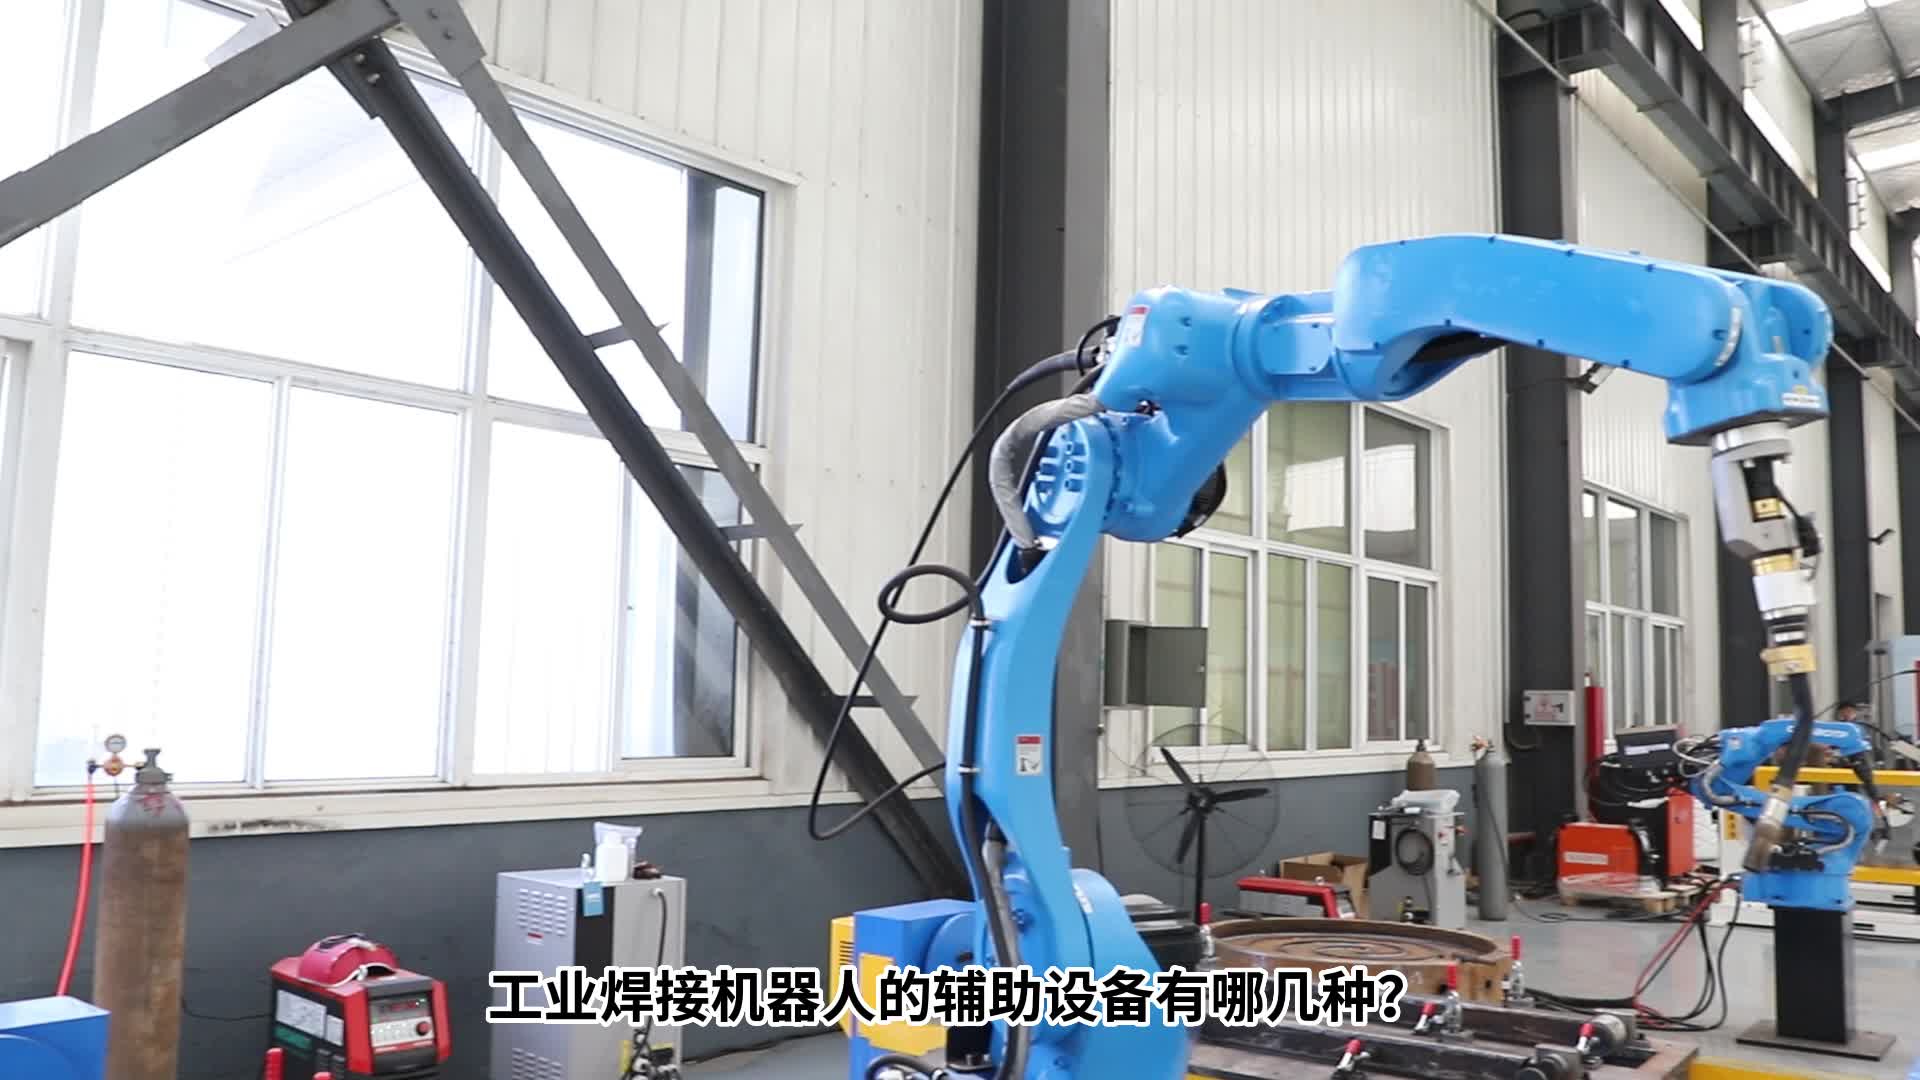 工业焊接机器人的辅助设备有哪几种#机器人 #电路原理 #产品方案 